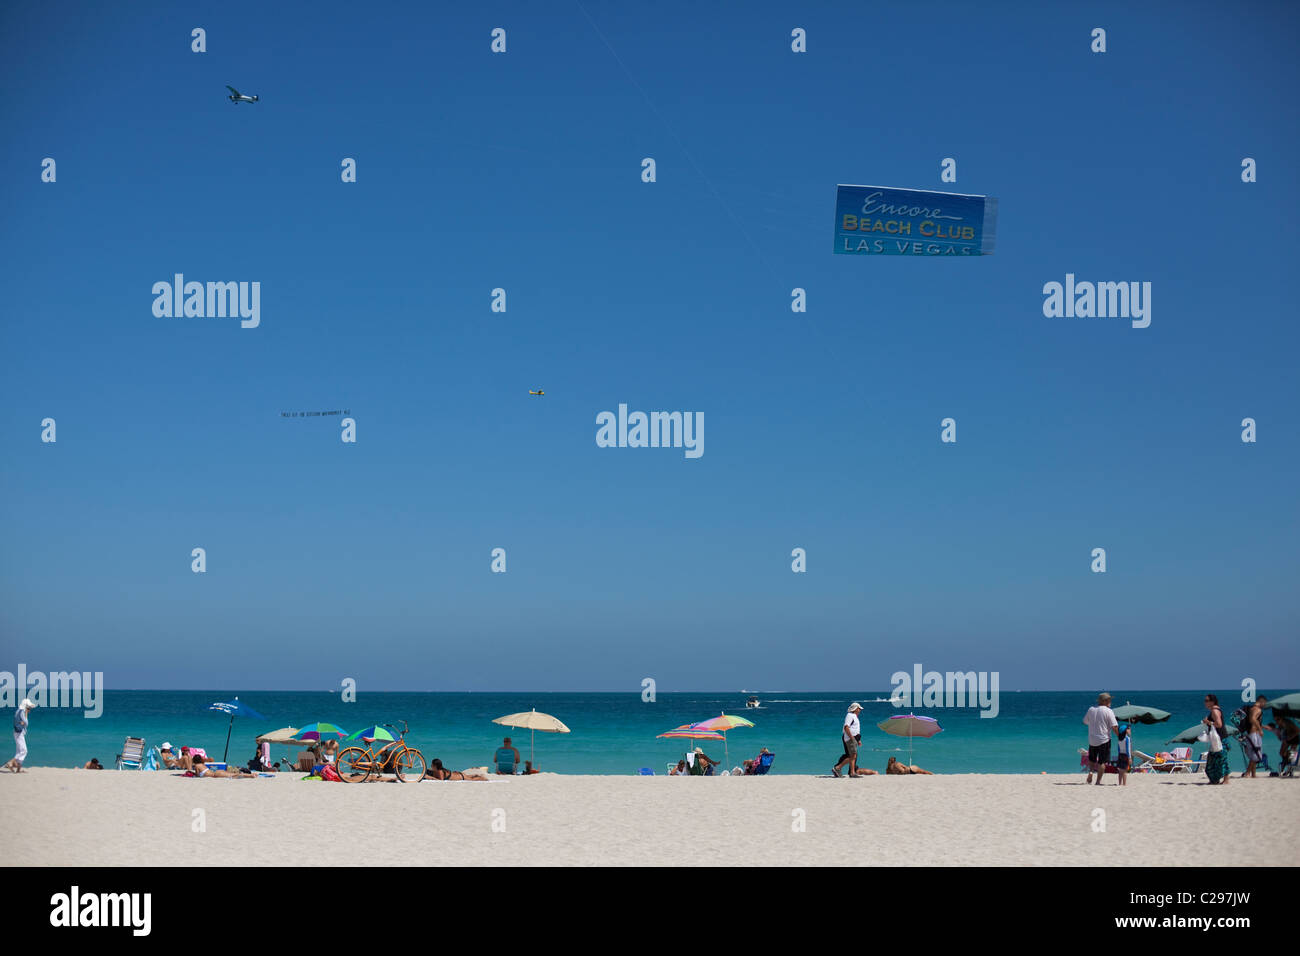 Avion avec message publicitaire survolant la Beach, South Beach, Miami, Floride, USA Banque D'Images